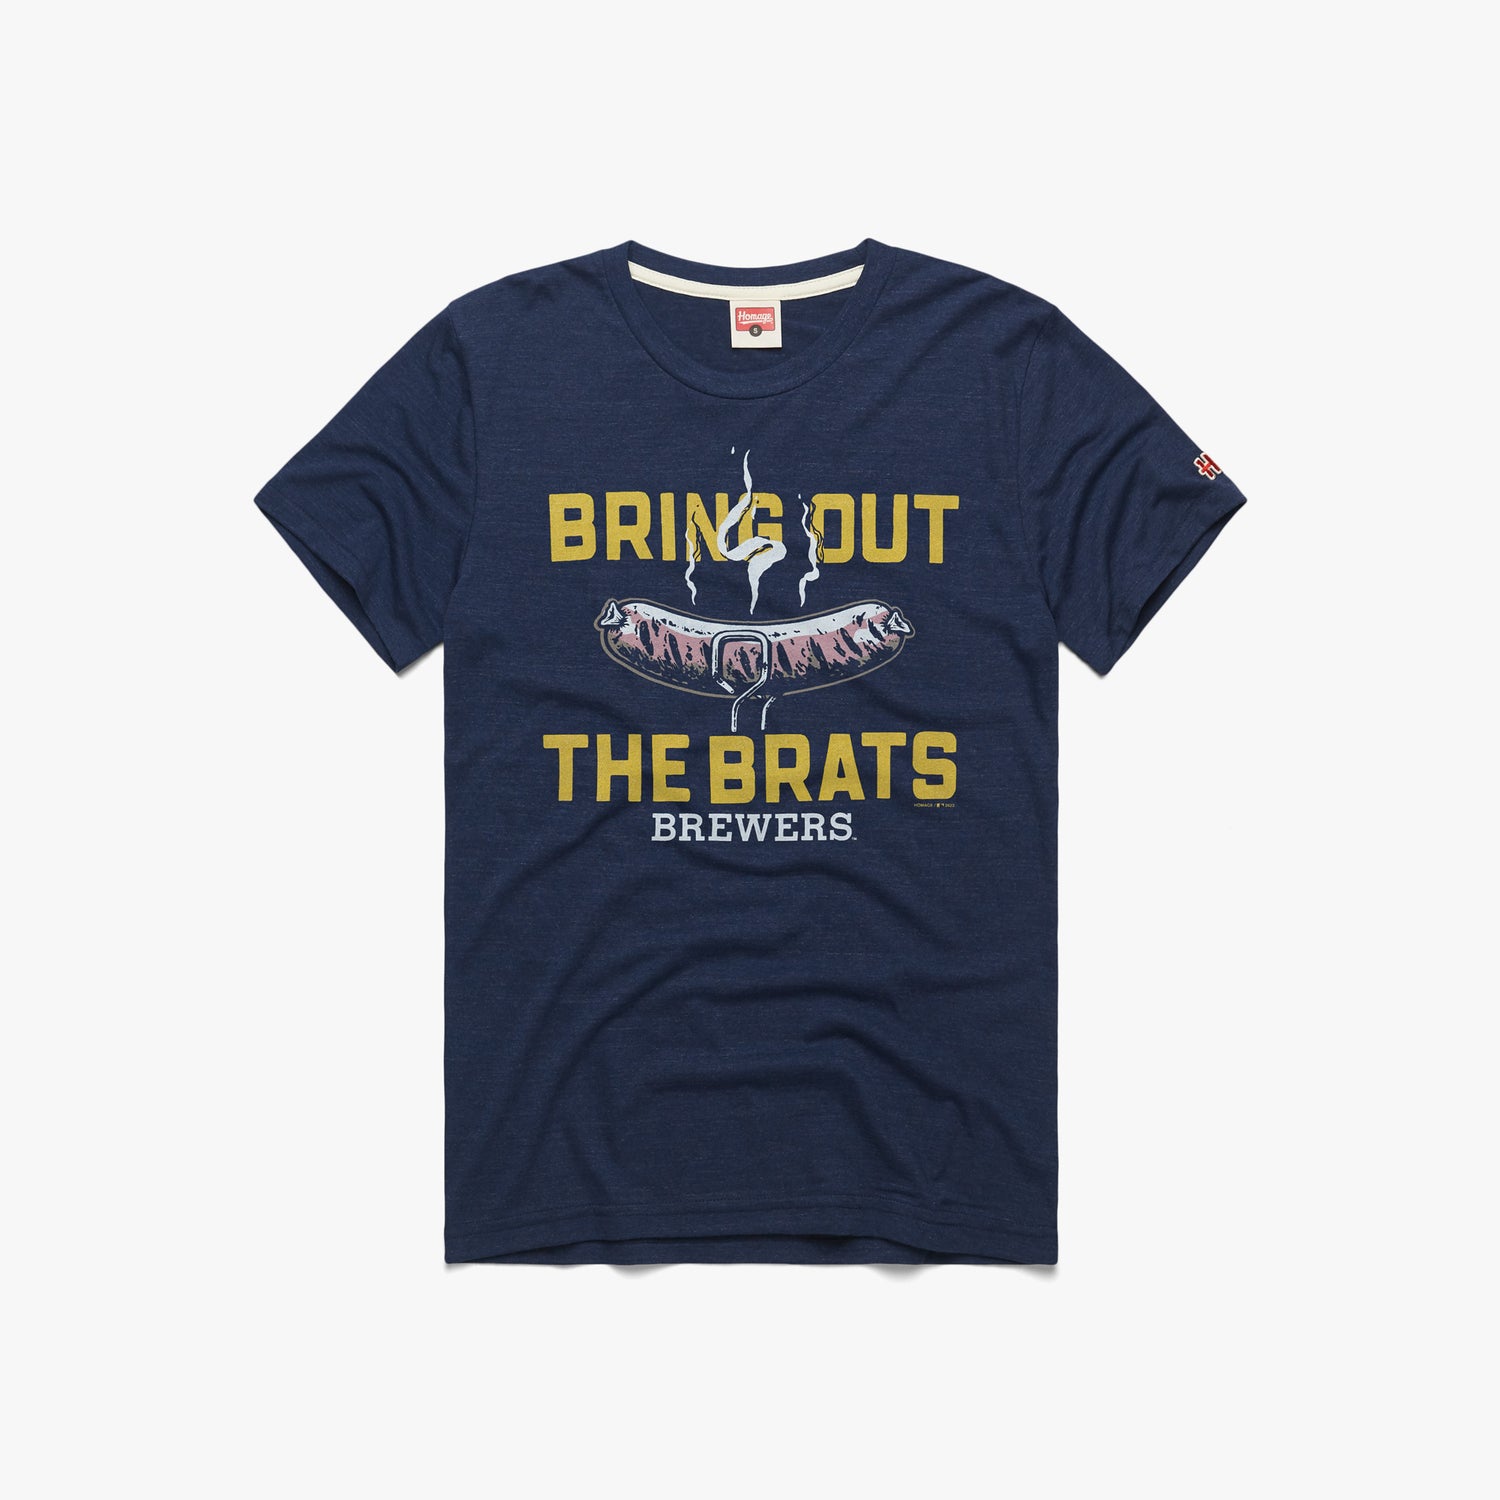 Milwaukee Brewers Pro Standard Team T-Shirt - Navy